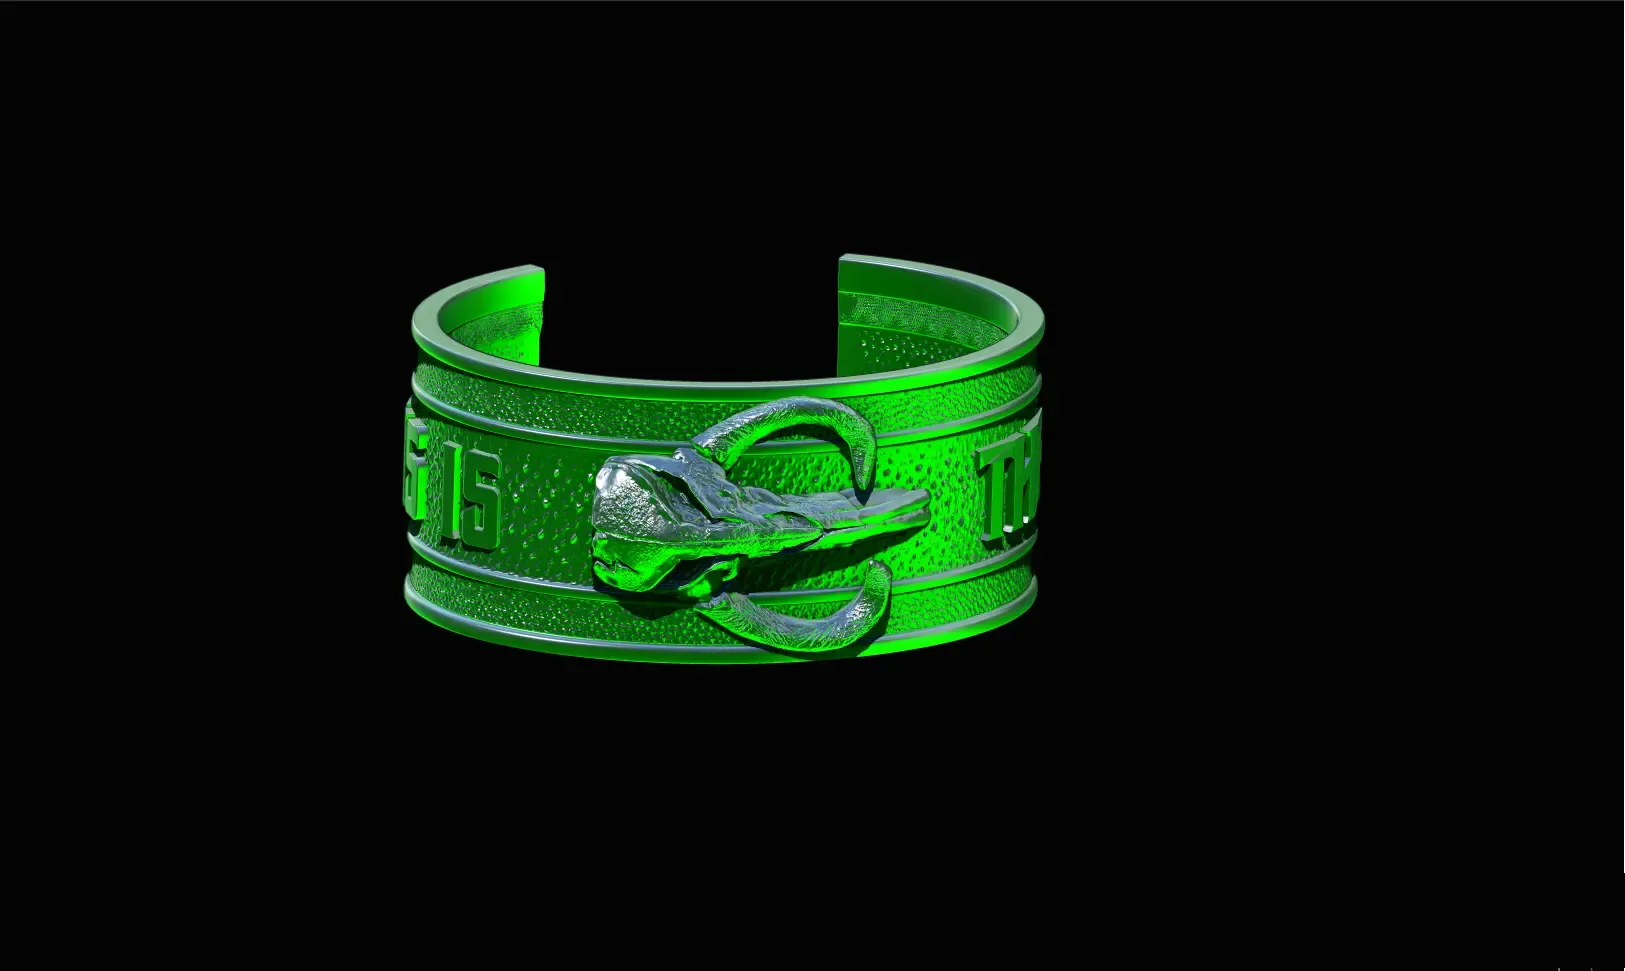 Mandalorian Mythosaur bracelet